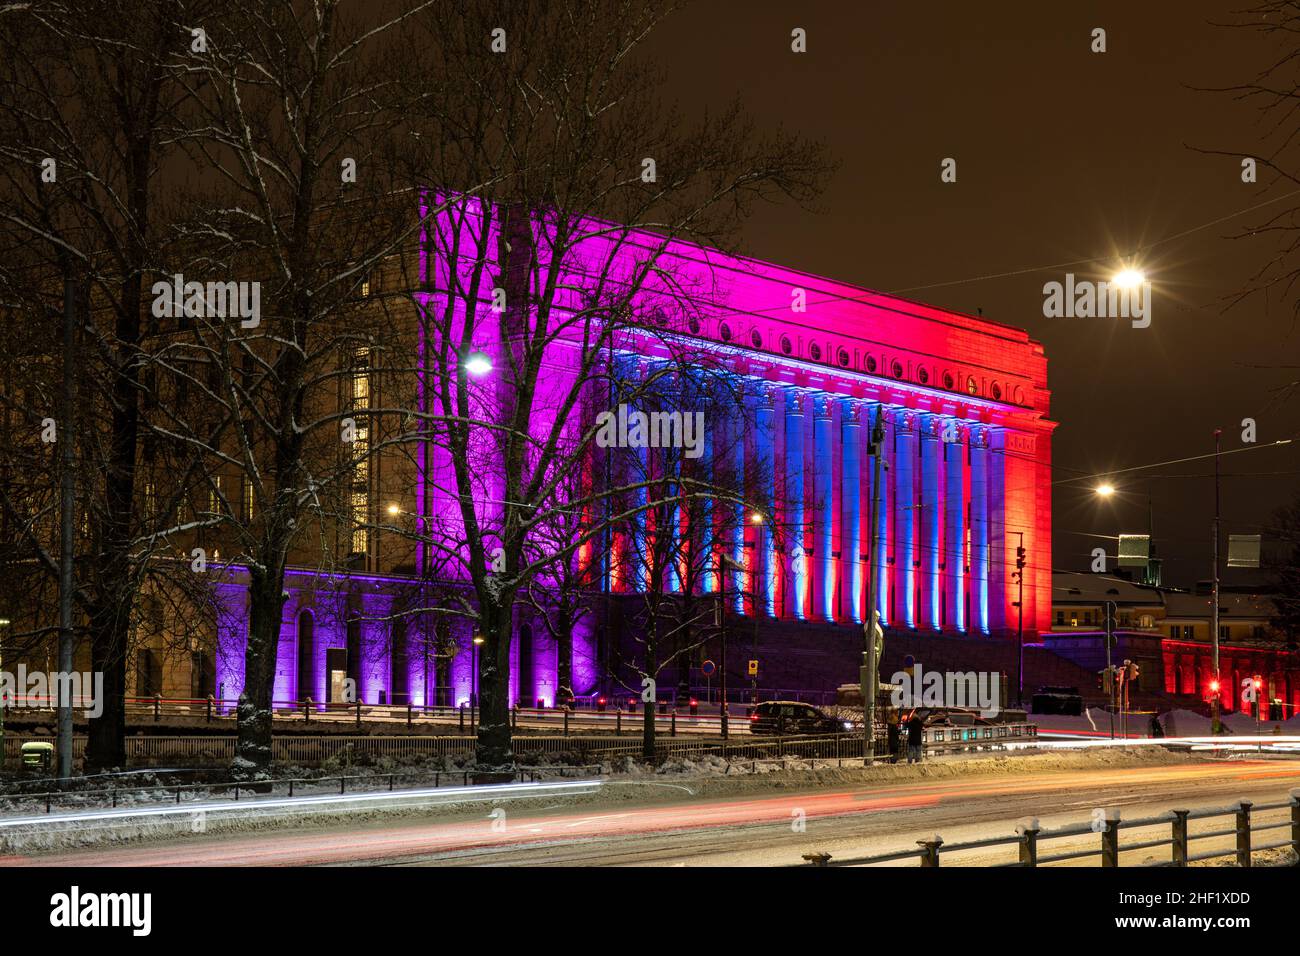 La Casa del Parlamento se iluminó en rojo y azul durante el Festival de Arte Ligero Lux Helsinki en Helsinki, Finlandia Foto de stock